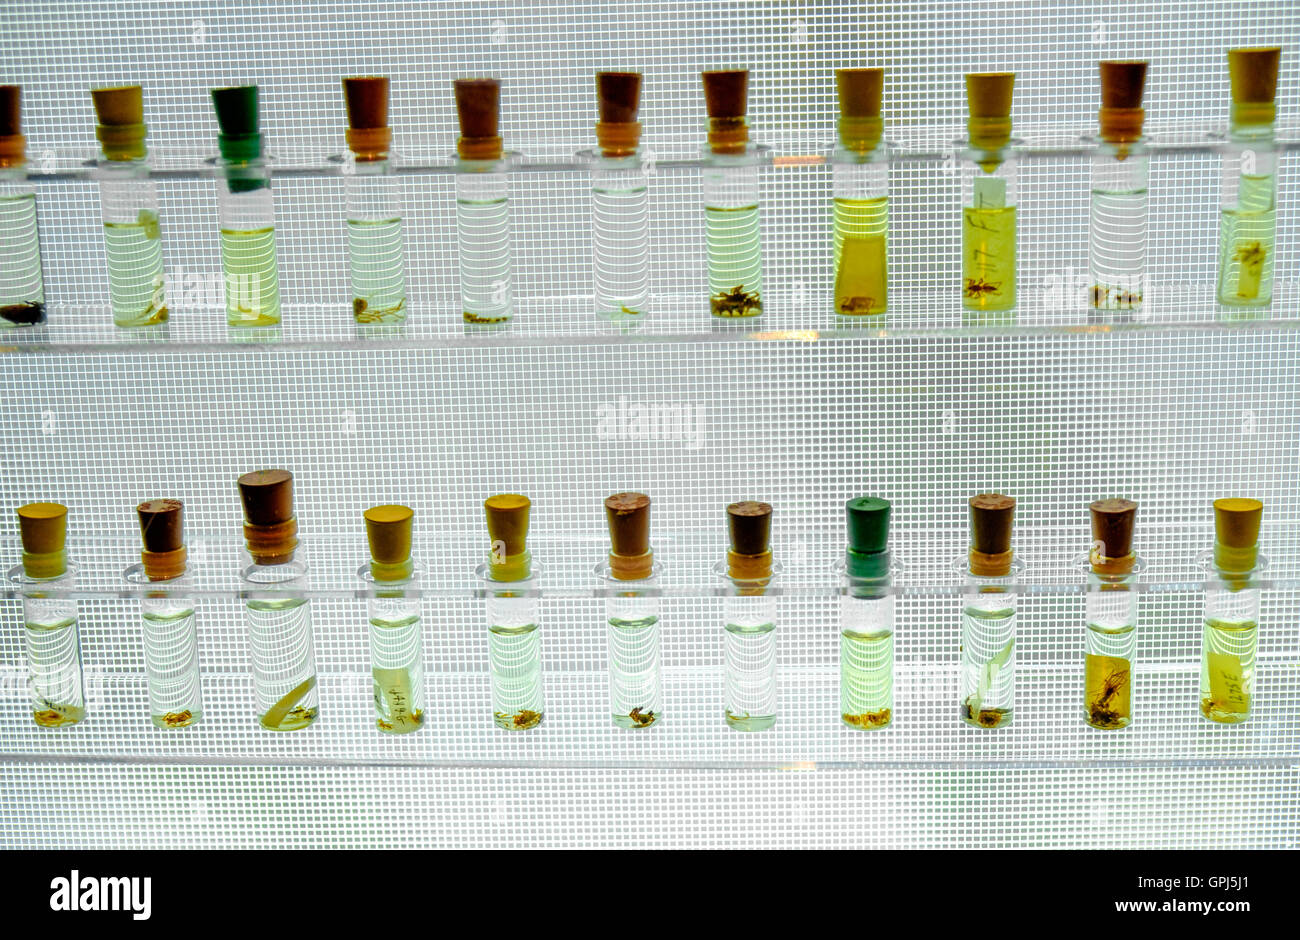 Araignées dans des tubes de verre de spécimen dans 'Saraignées vivant !" exposition dans le musée de la Science de Boston, USA Banque D'Images